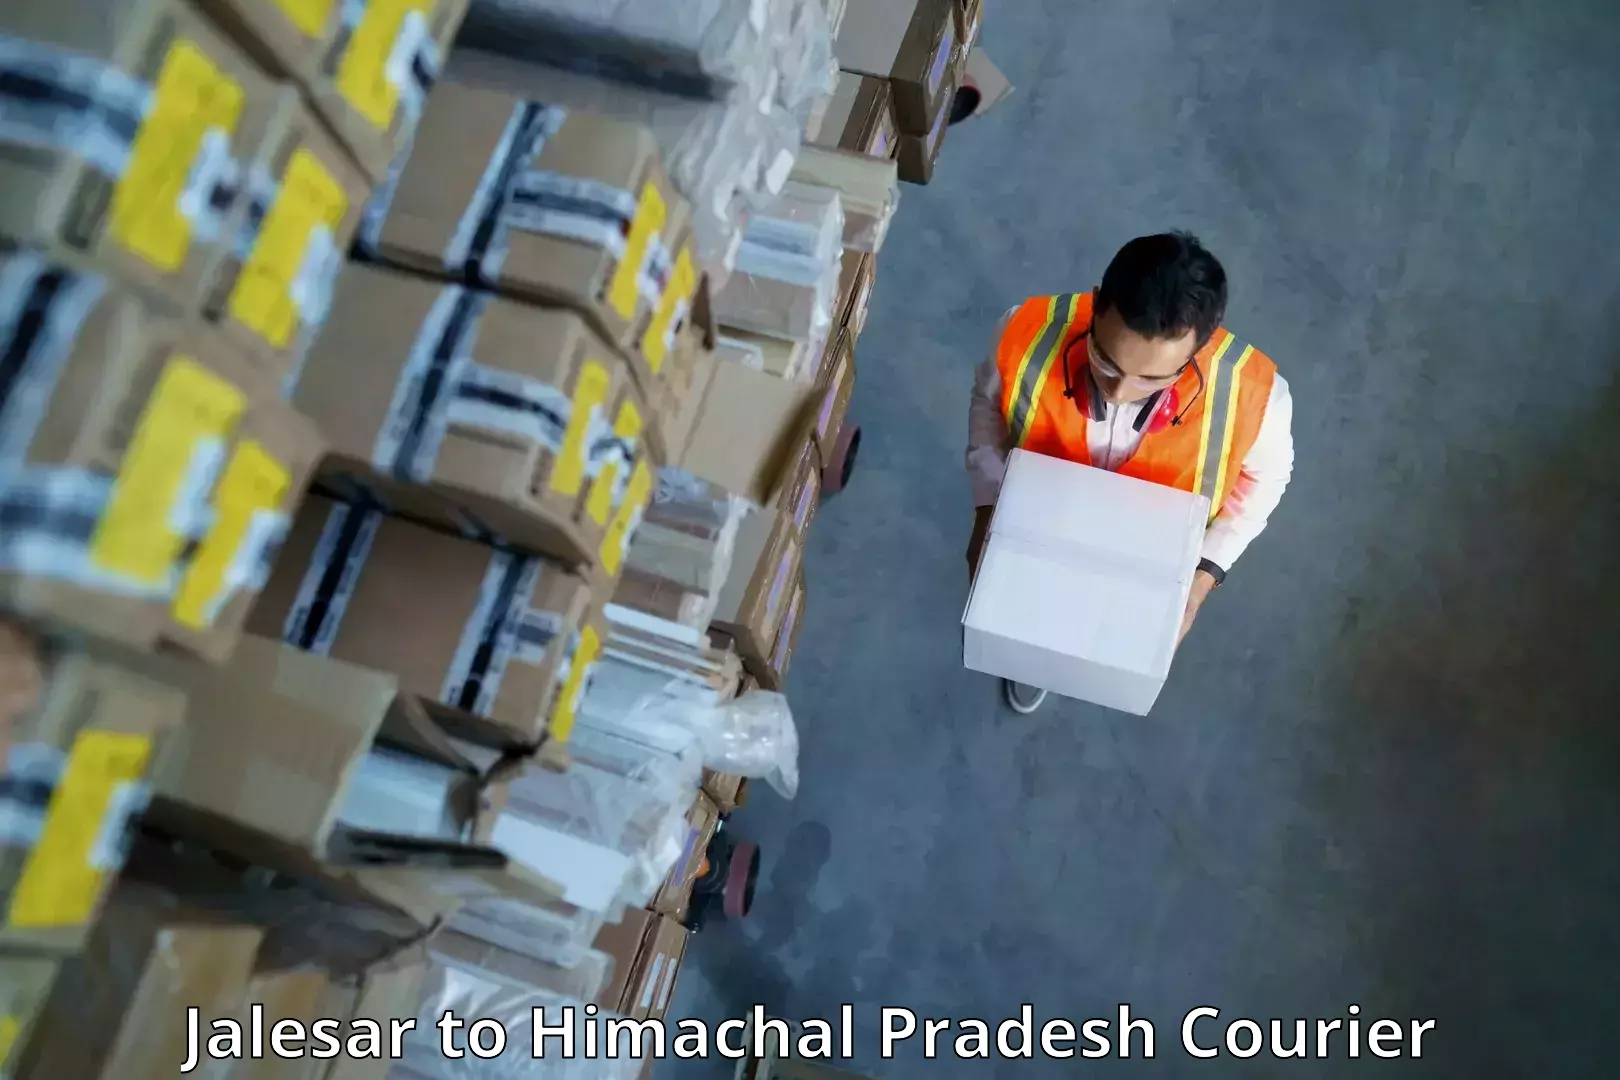 Efficient cargo handling in Jalesar to Himachal Pradesh